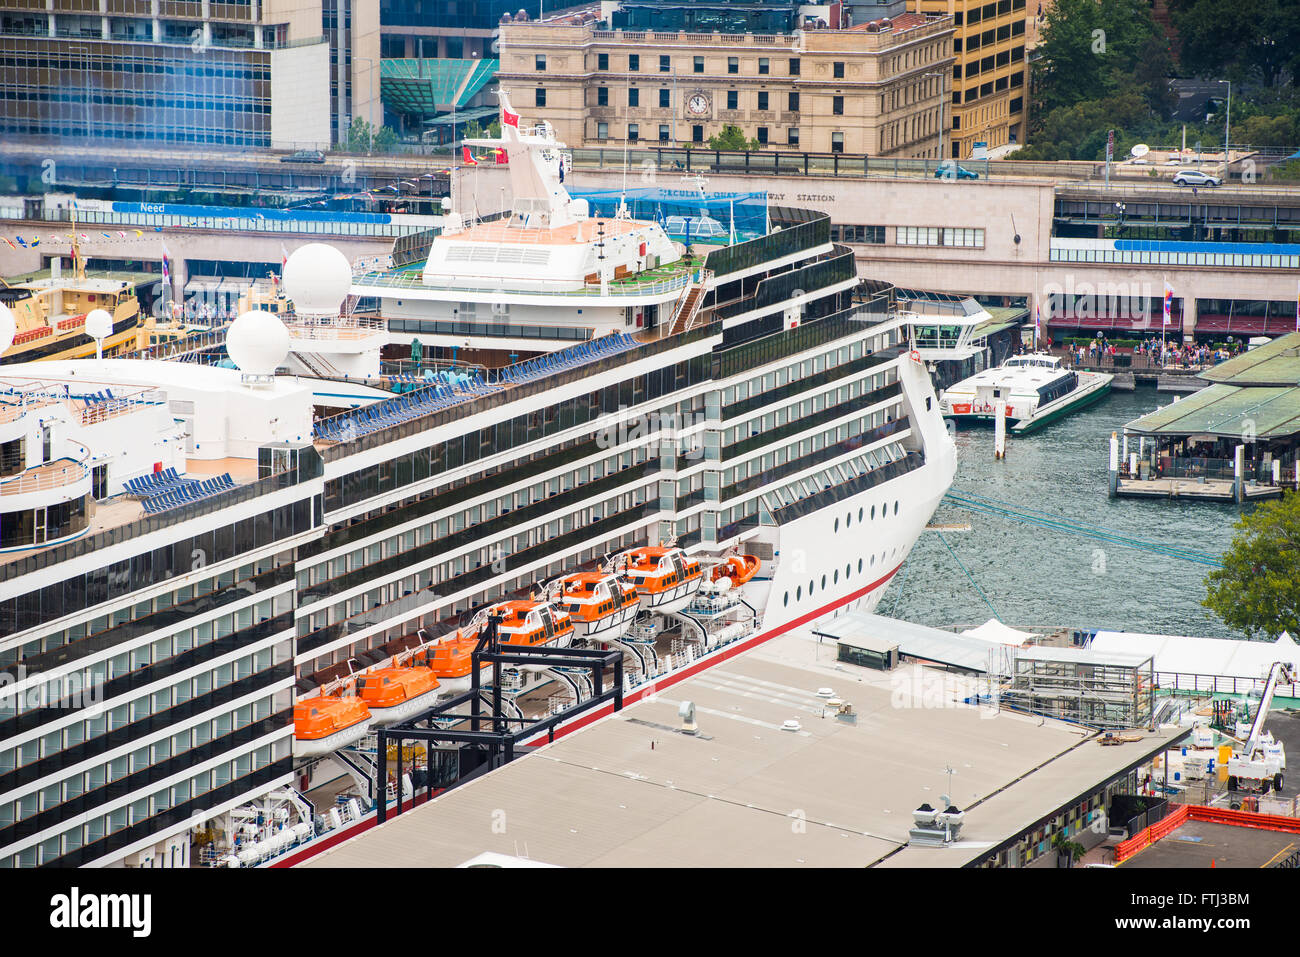 Paquebot de croisière de luxe, Radiance of the Seas, accosté à Circular Quay et les passagers débarquent. Banque D'Images